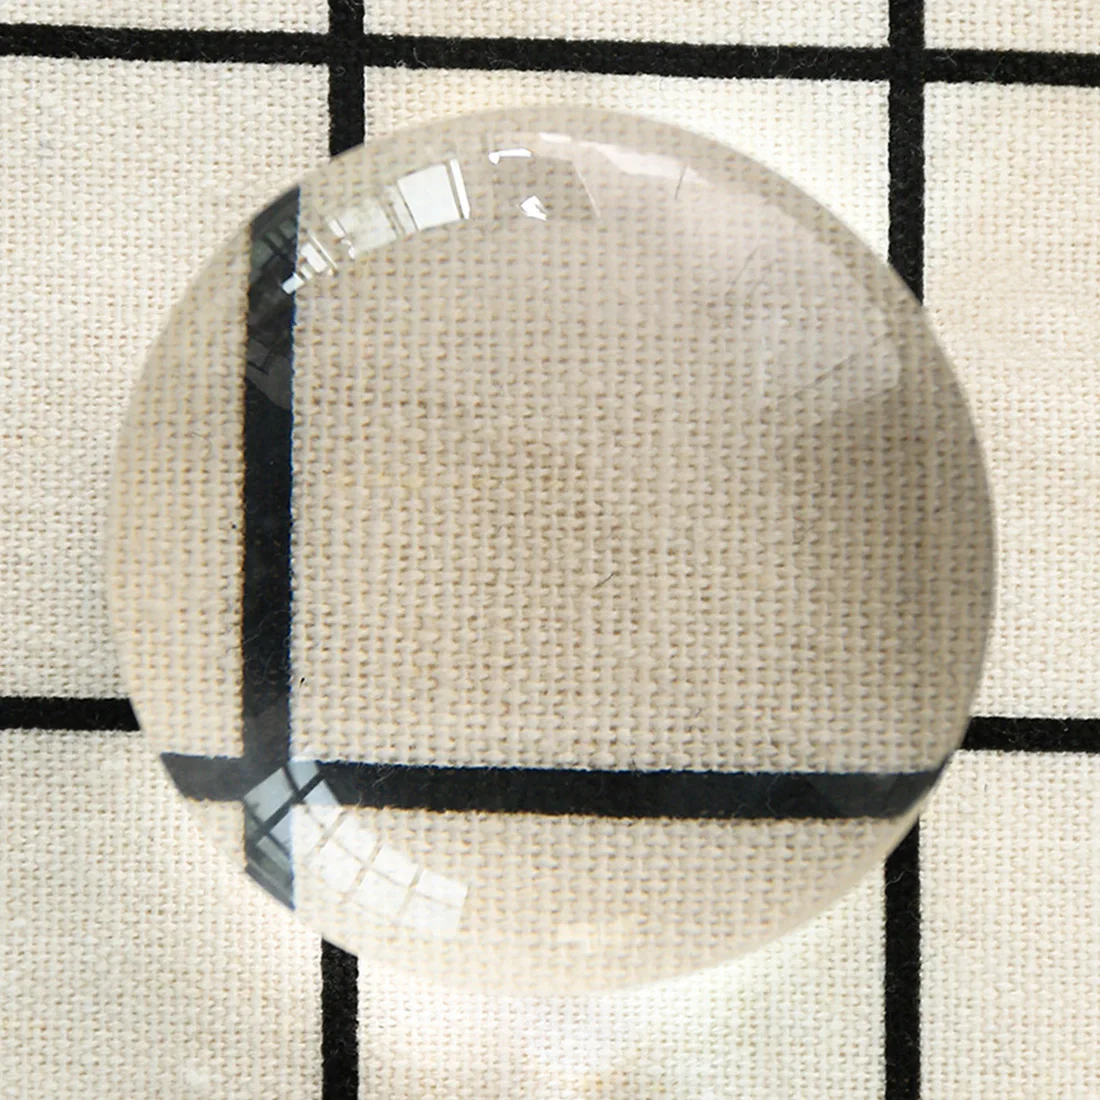 

Купольное акриловое увеличительное стекло 7X/8X, пресс-папье лупа для карты, инструмент для чтения, лупа, увеличительное стекло 50/60 мм